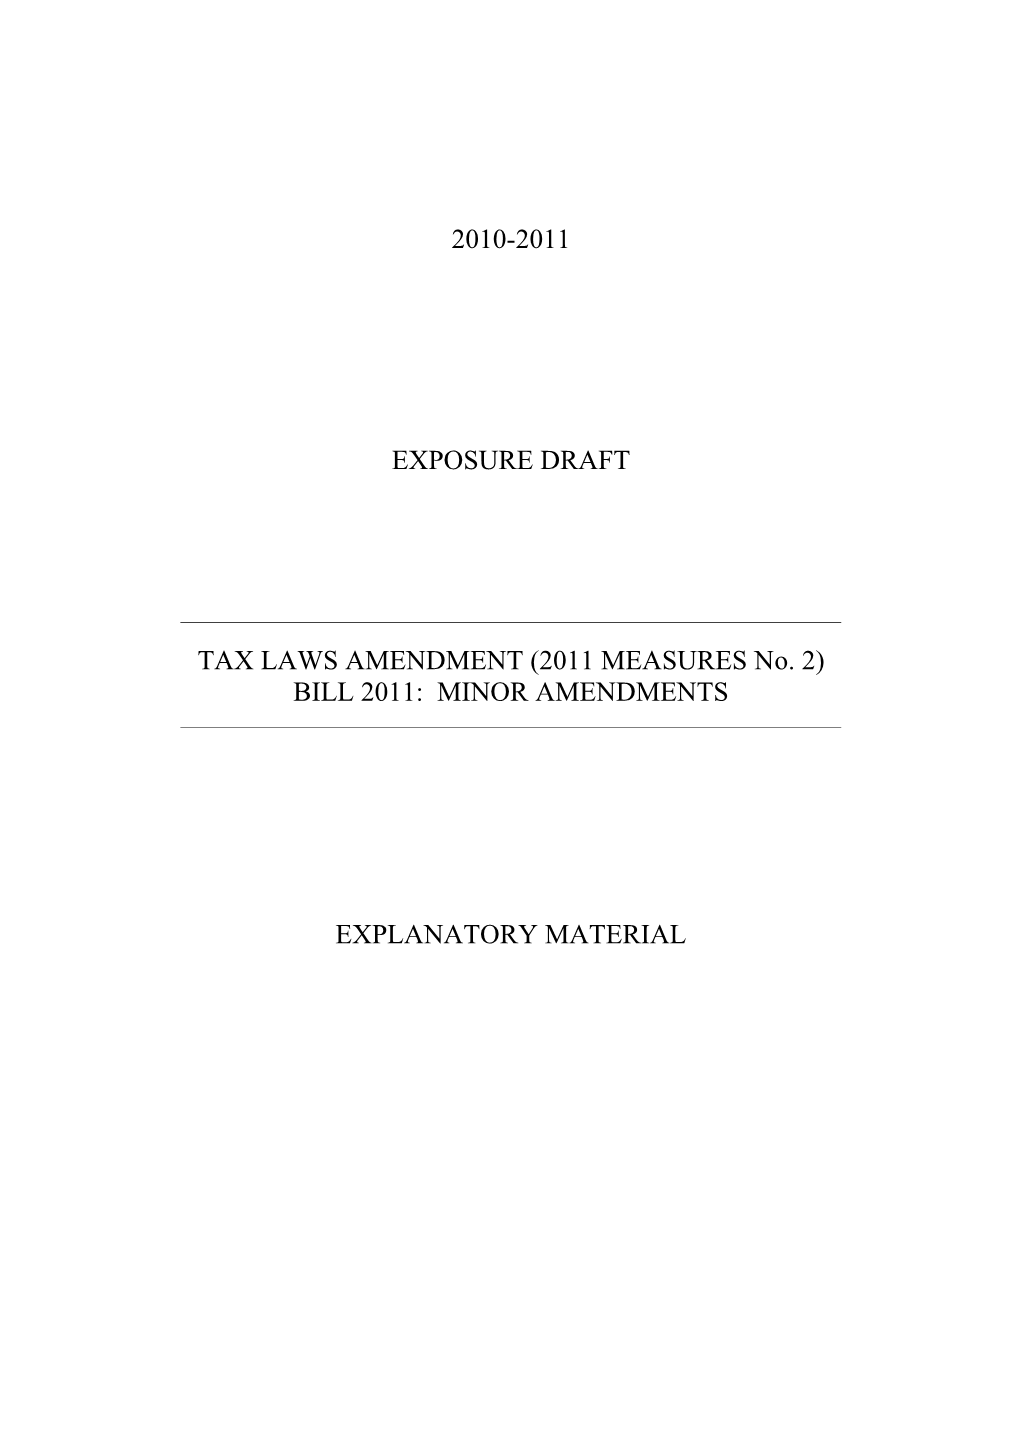 Exposure Draft - Explanatory Material - Minor Amendments